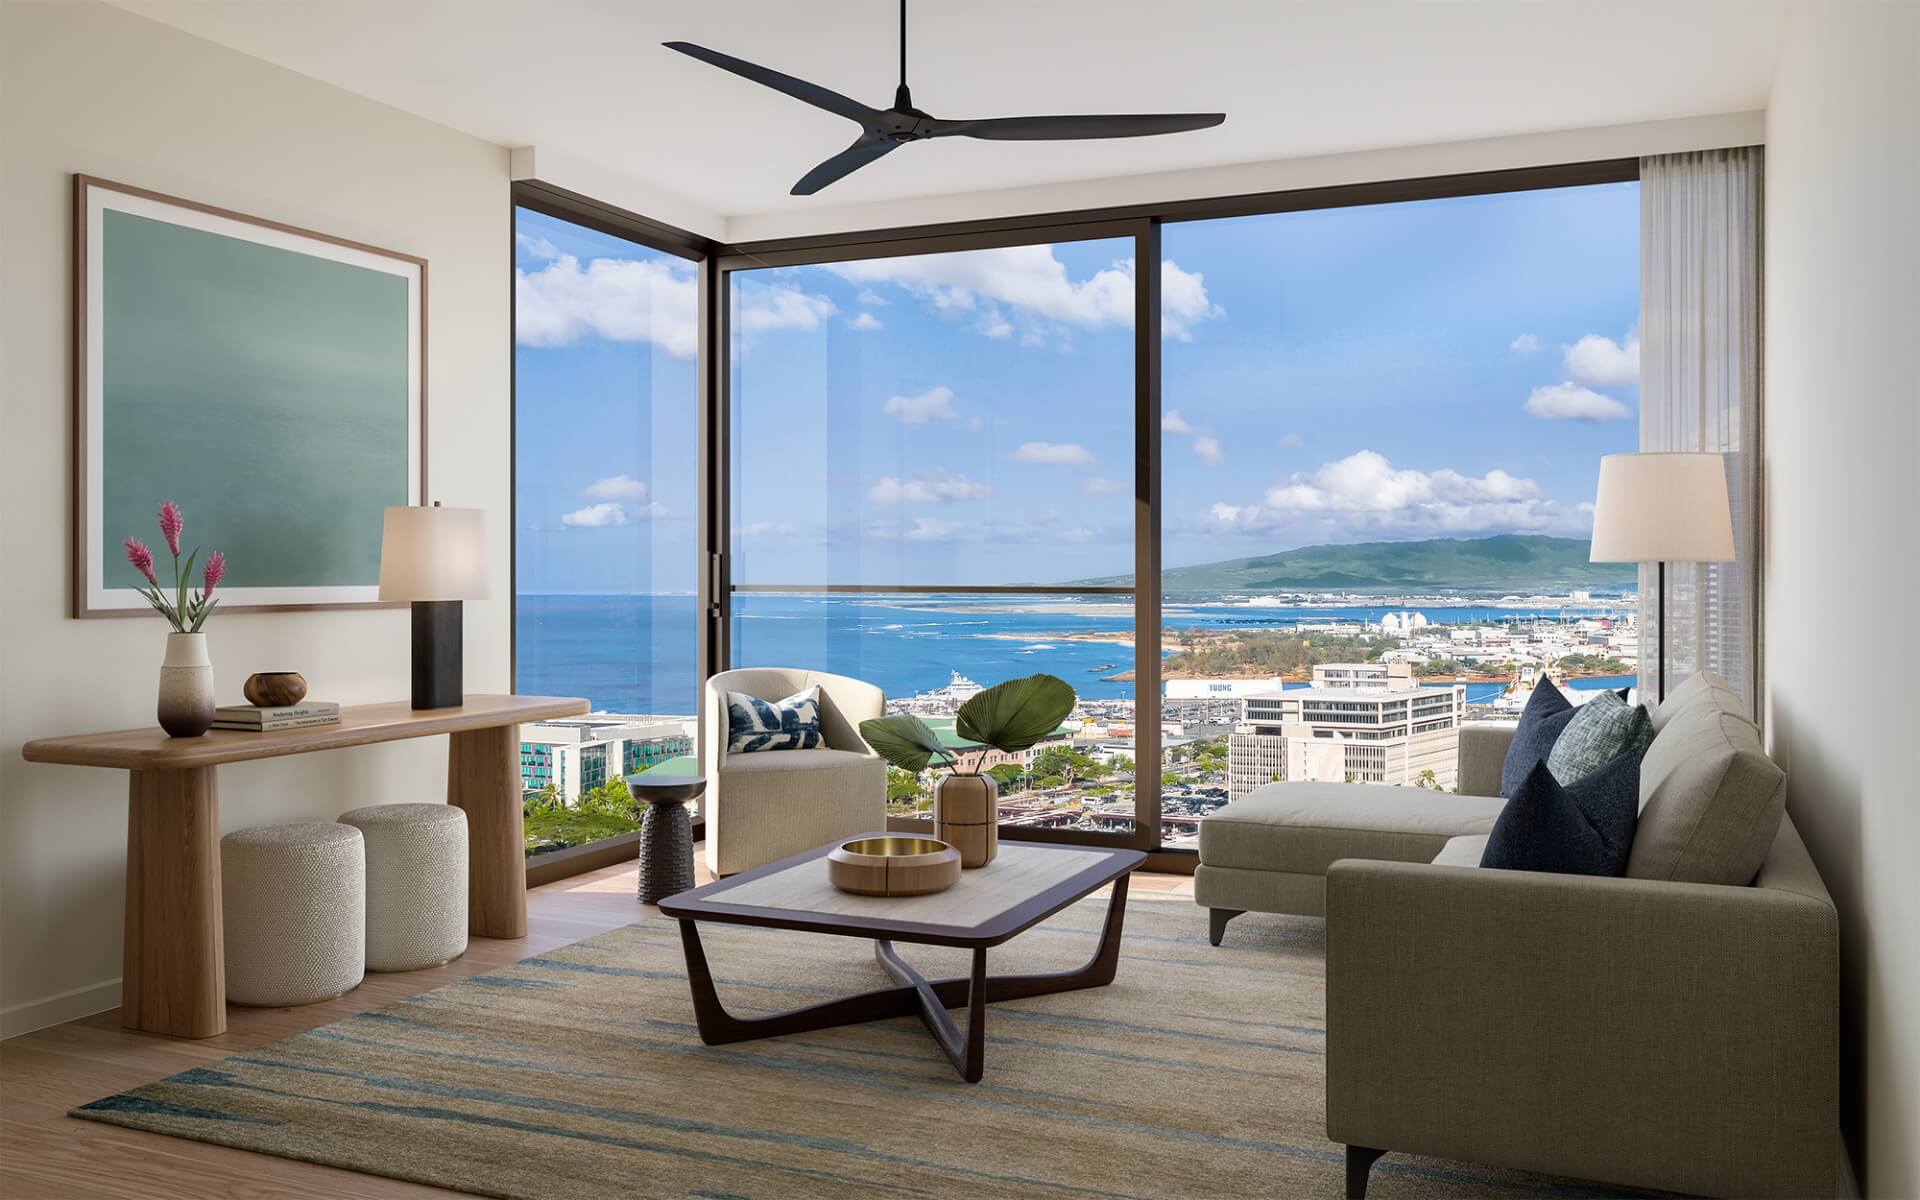 Kalae one bedroom Residence 03 Living Room with westward views of the Honolulu coastline.